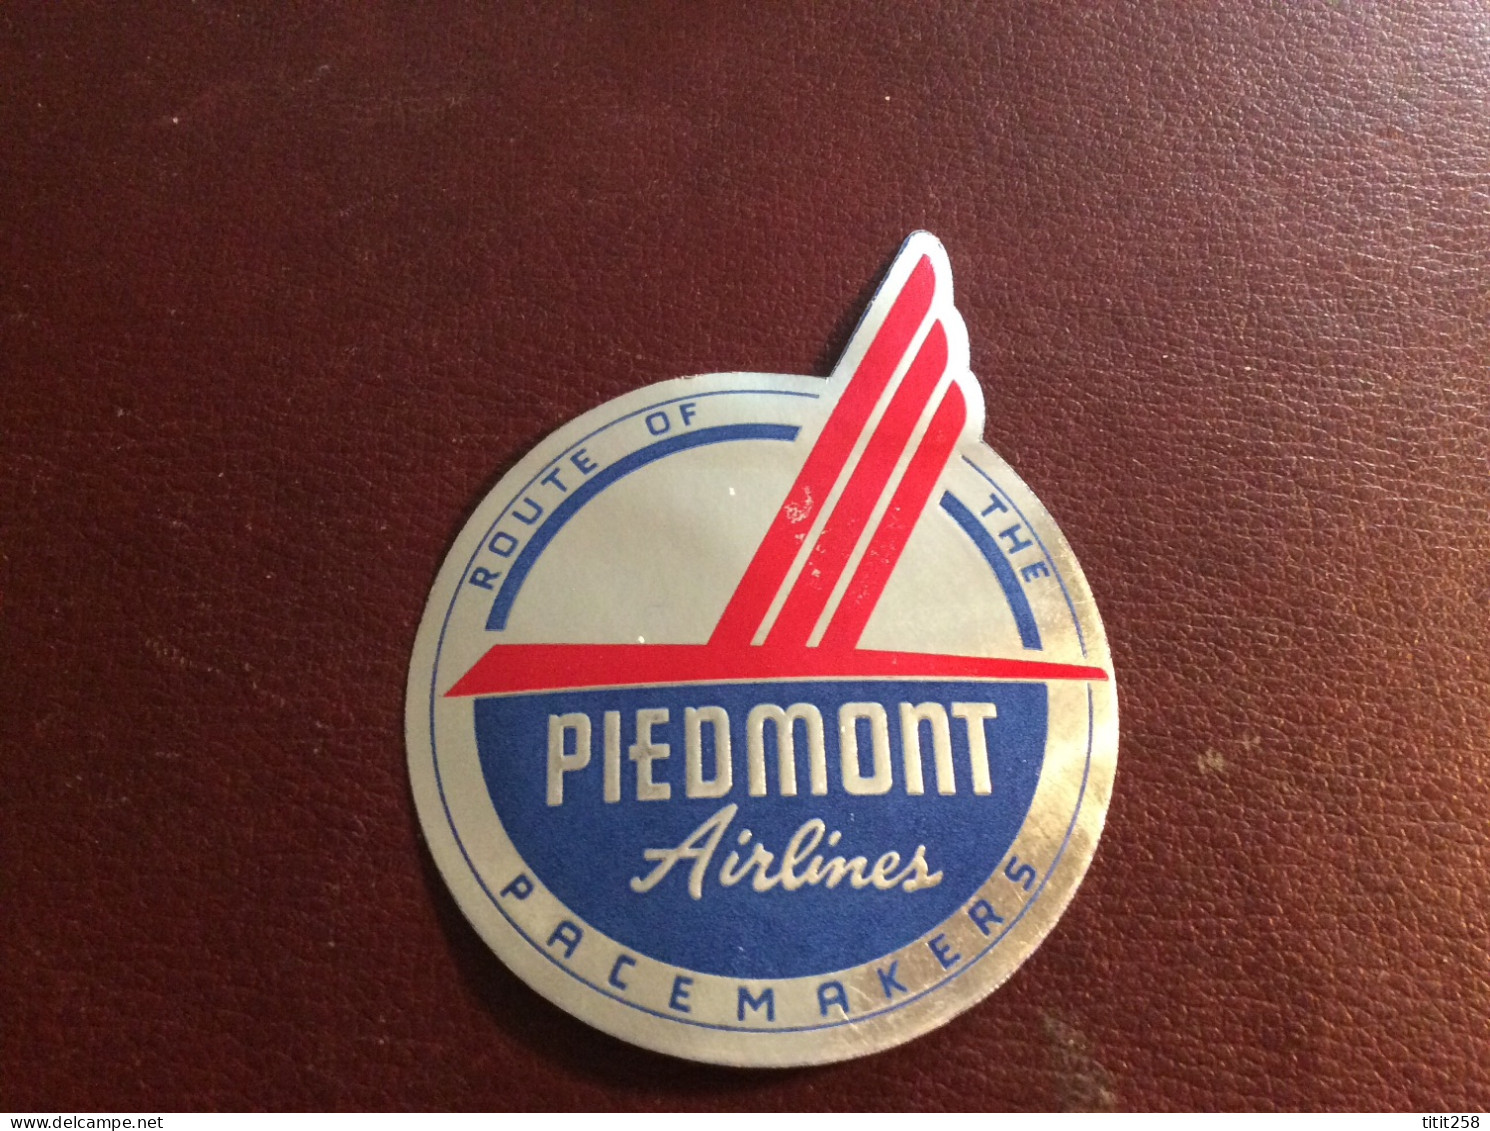 PIEDMONT AIRLINES ROUTE OF THE / PACEMAKERS  ( Avions Aéroports ) - Étiquettes à Bagages